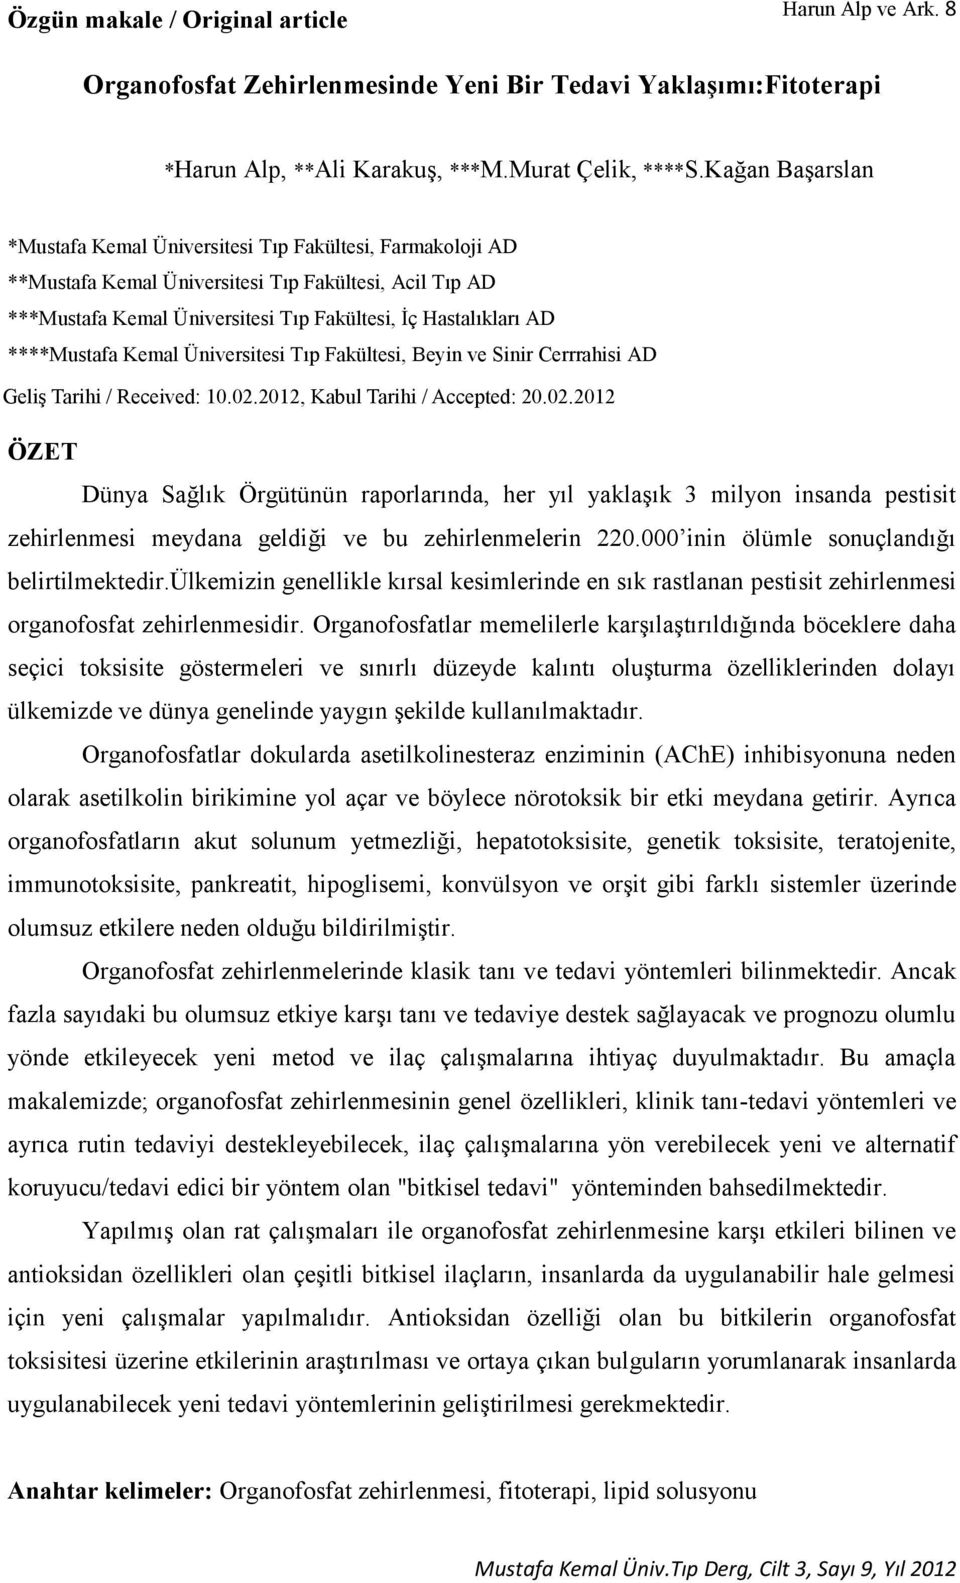 ****Mustafa Kemal Üniversitesi Tıp Fakültesi, Beyin ve Sinir Cerrrahisi AD Geliş Tarihi / Received: 10.02.